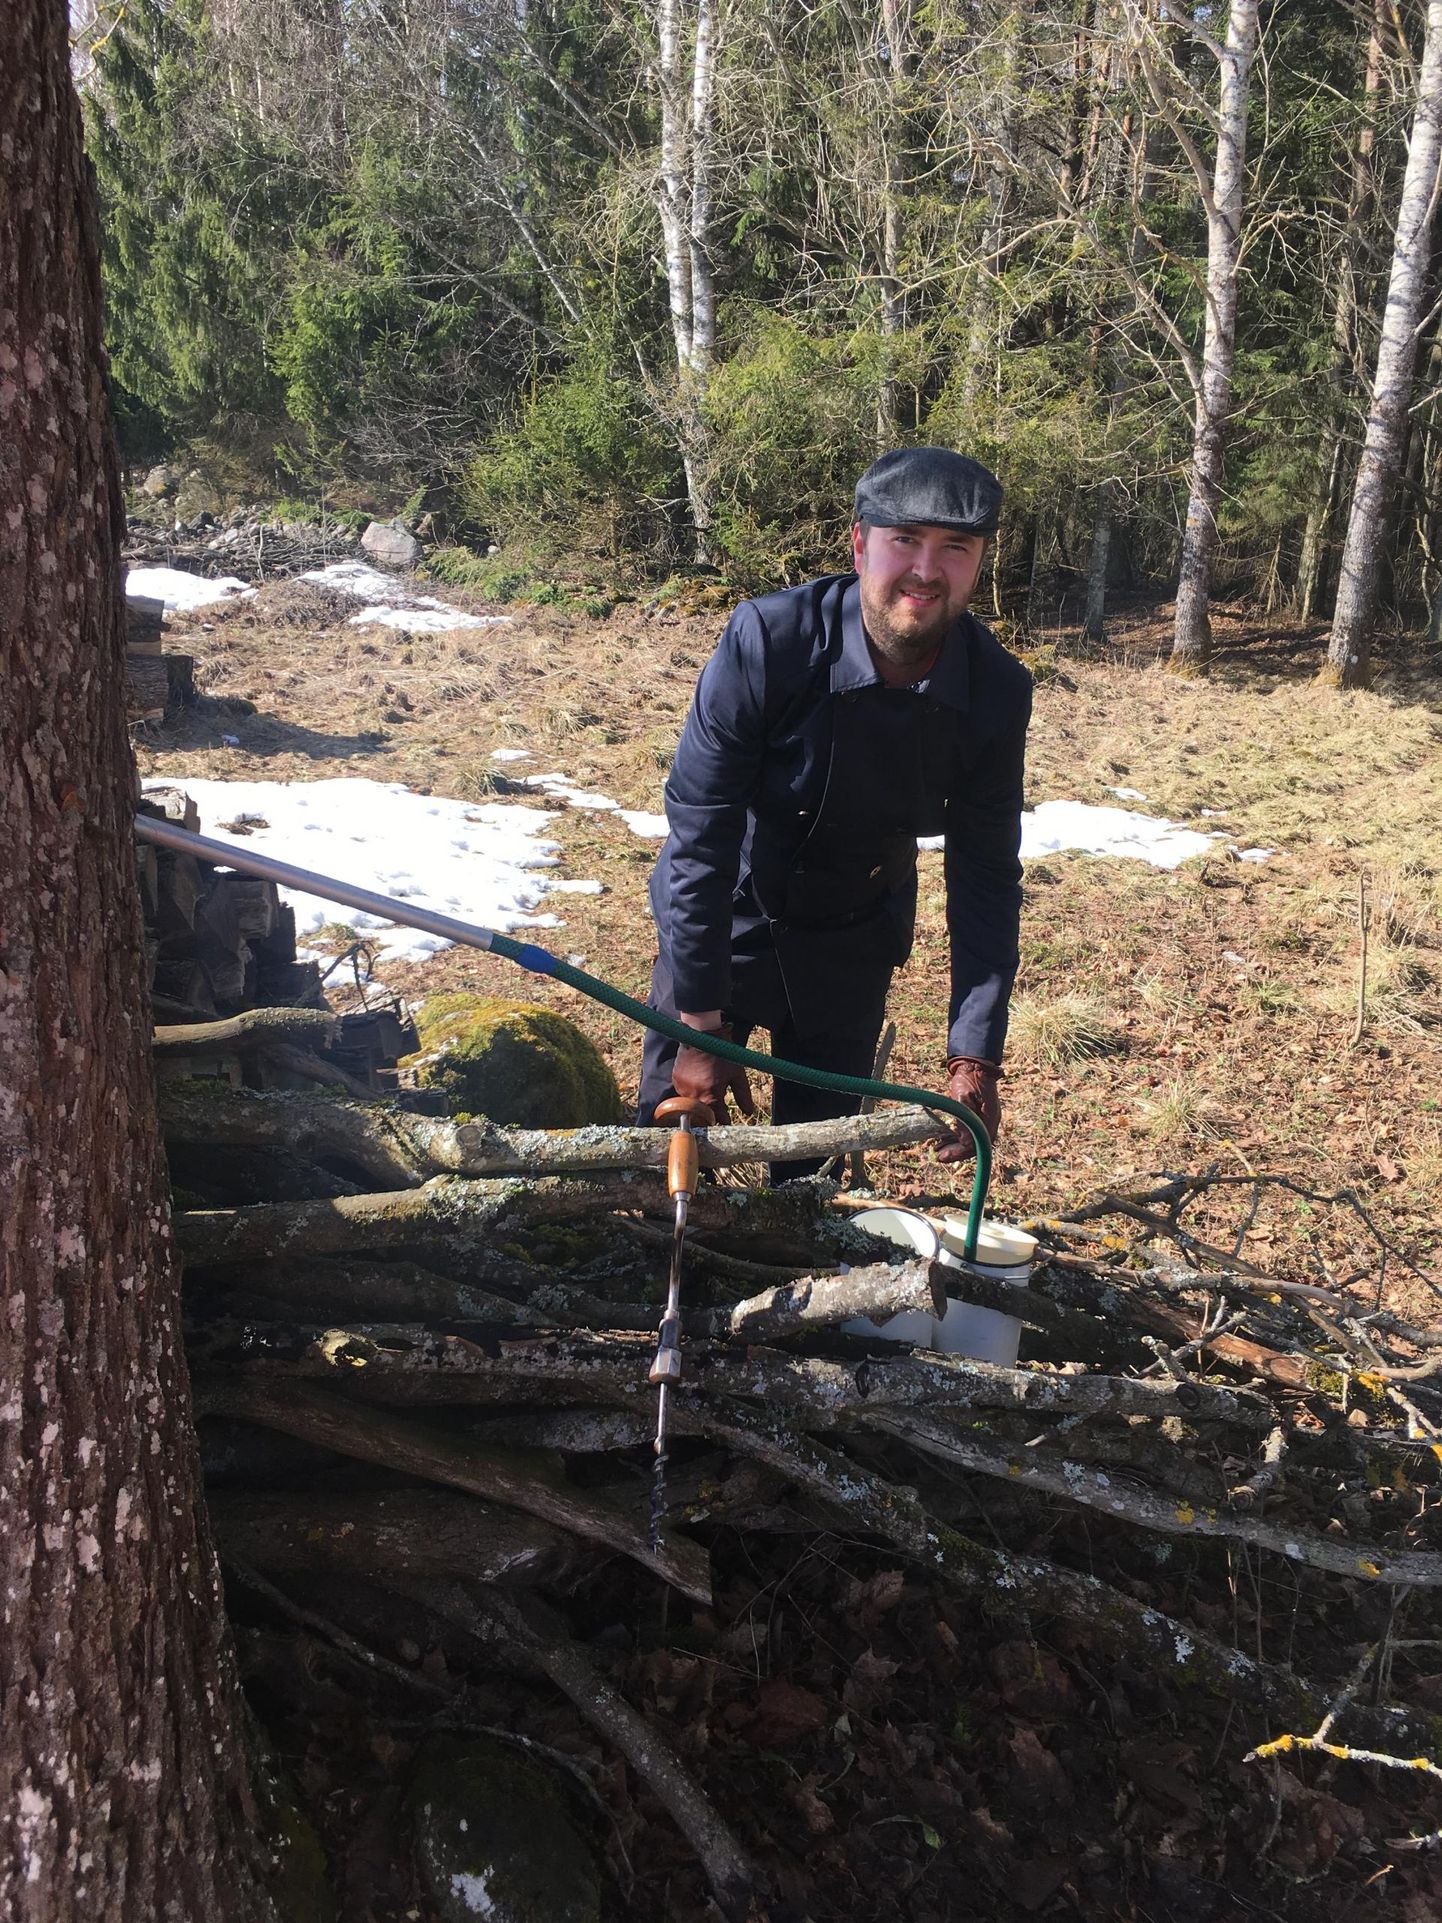 Martin Mülleril on kodu läheduses üks kindel vaher, mis teda igal kevadel mahlaga varustab. Ja vanaaegne käsipuur, millega puukoore sisse auk teha.